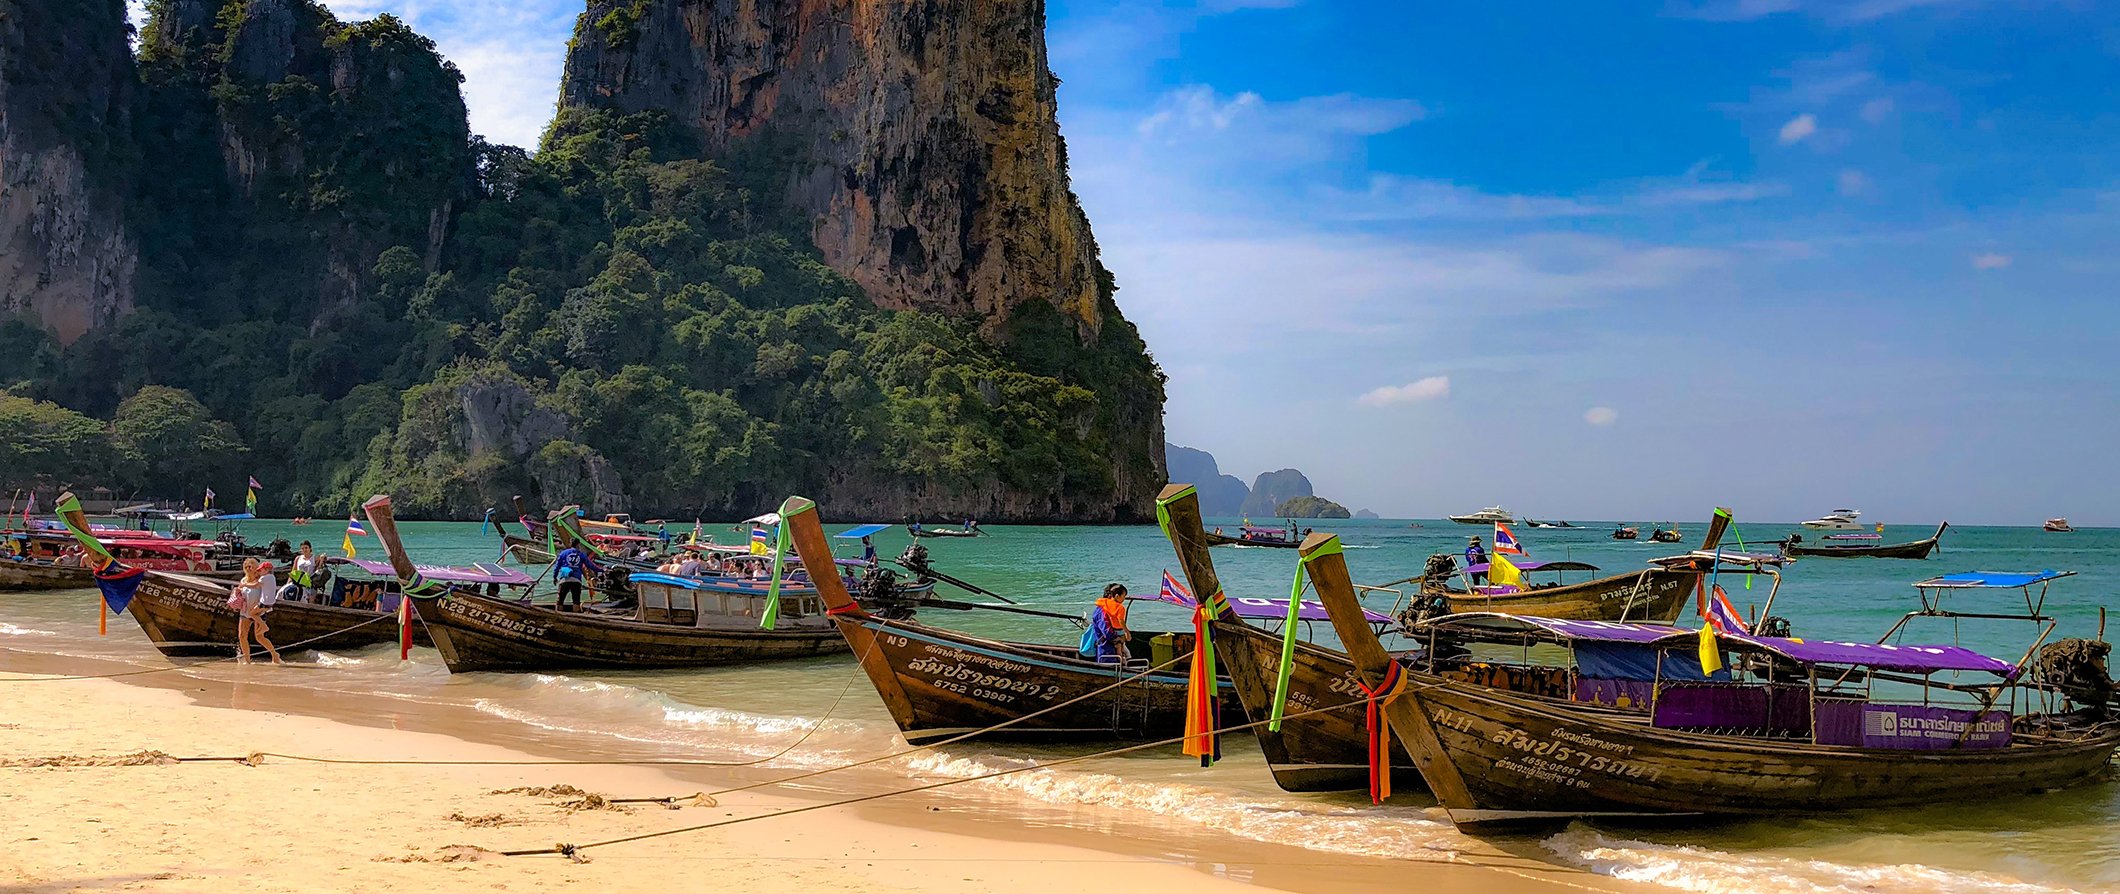 #TravelTalk: Backpacking Through Thailand with Nicholas Wiktorczyk